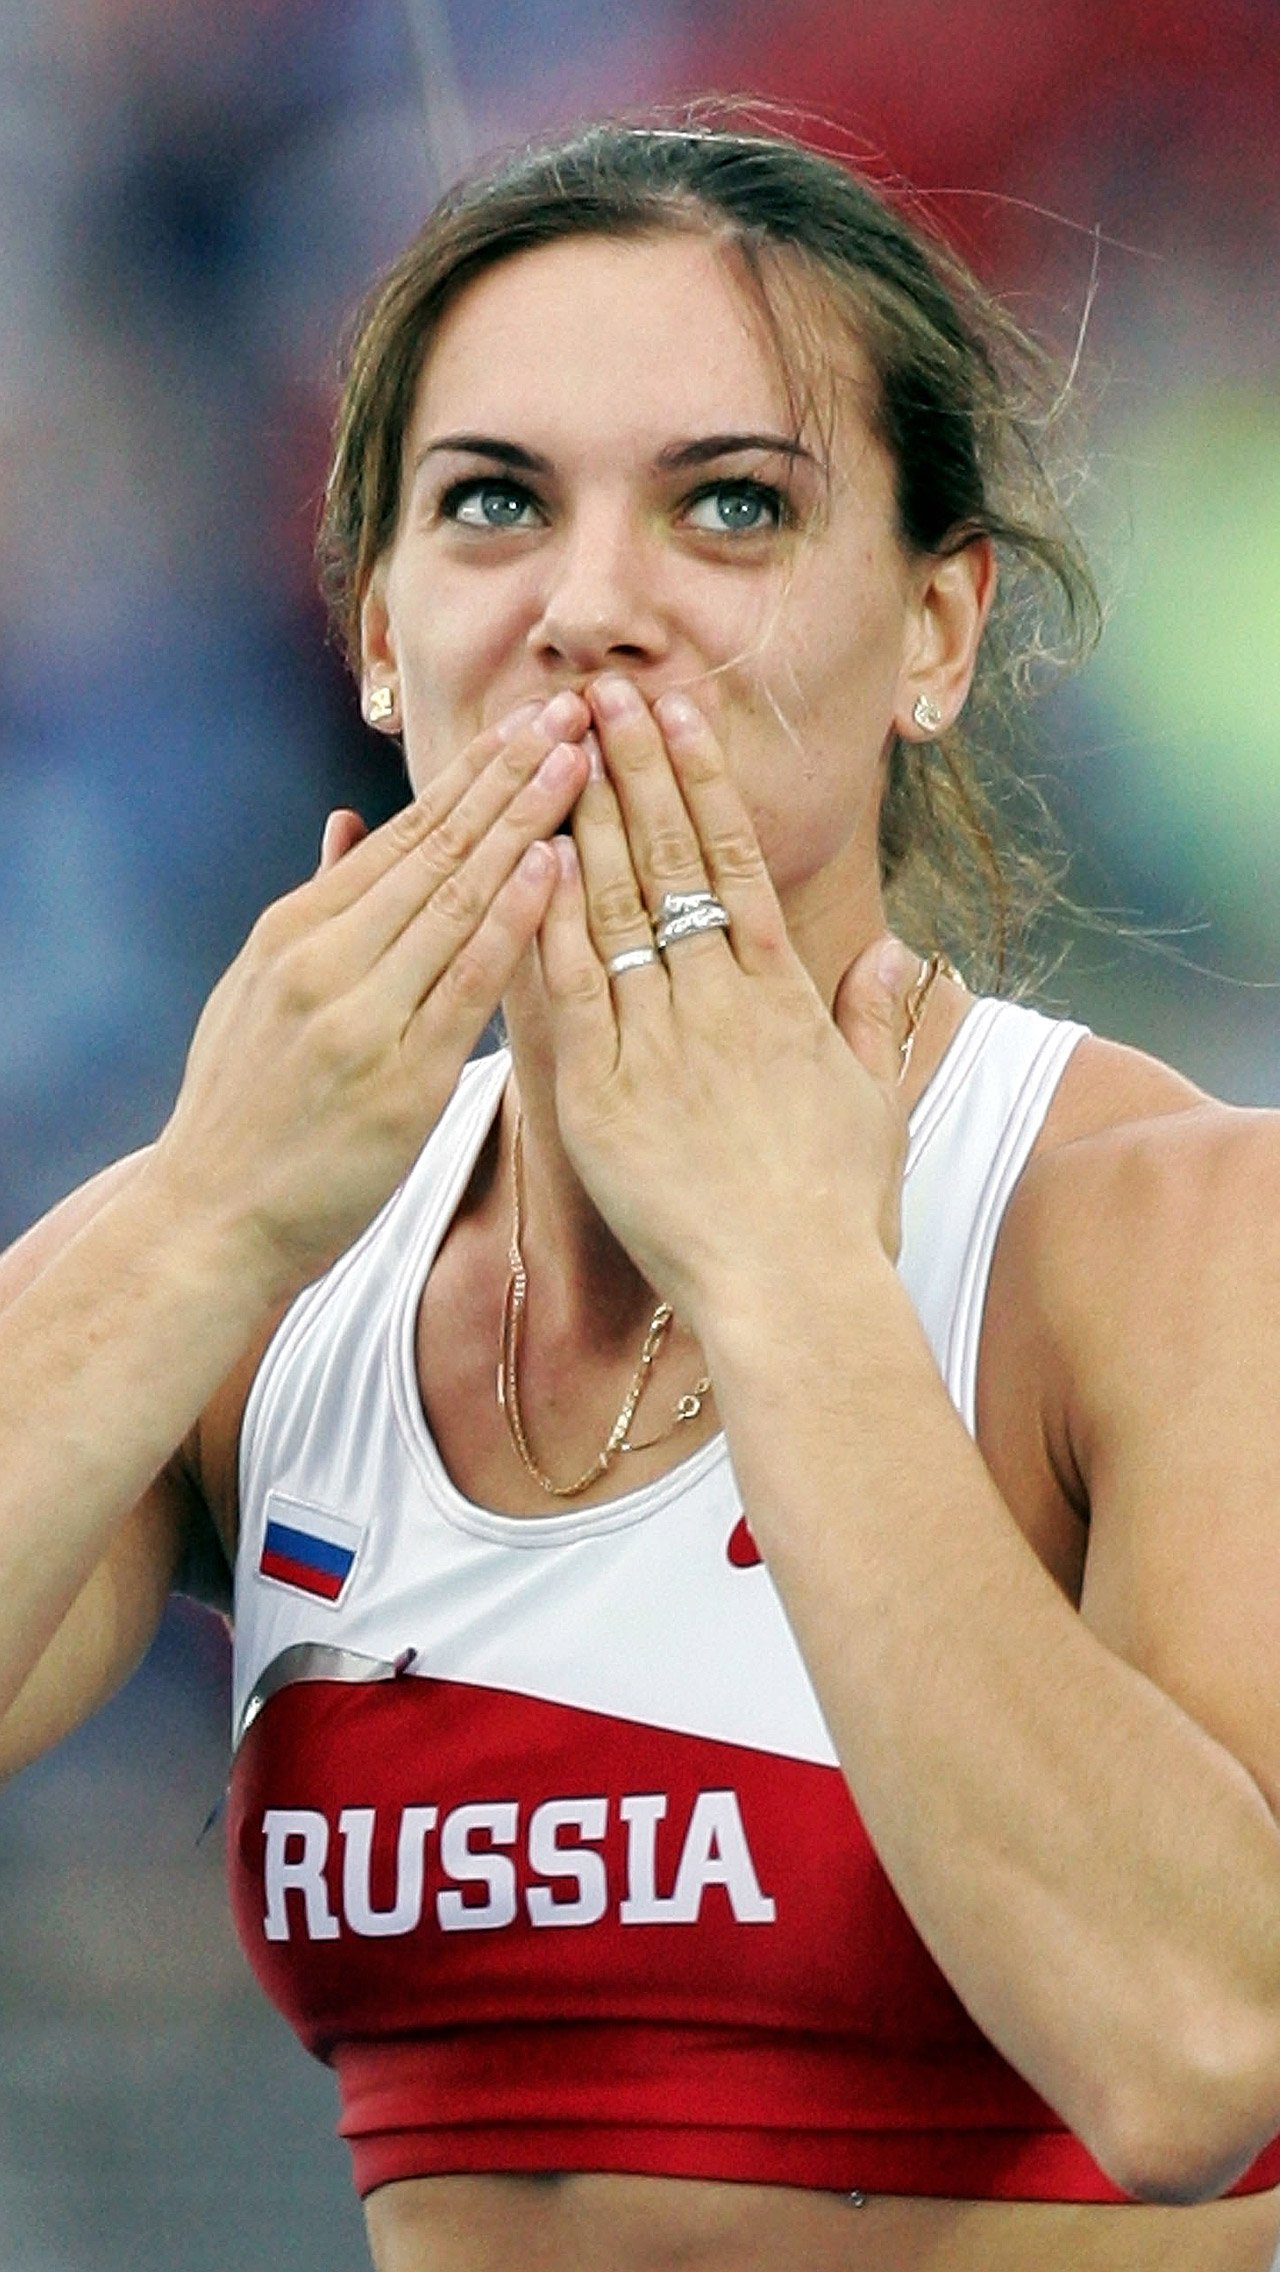 Последнюю значимую победу Исинбаева одержала на чемпионате мира в Москве в 2013 году. После этого она приостановила спортивную карьеру, а в 2016-м – завершила её.